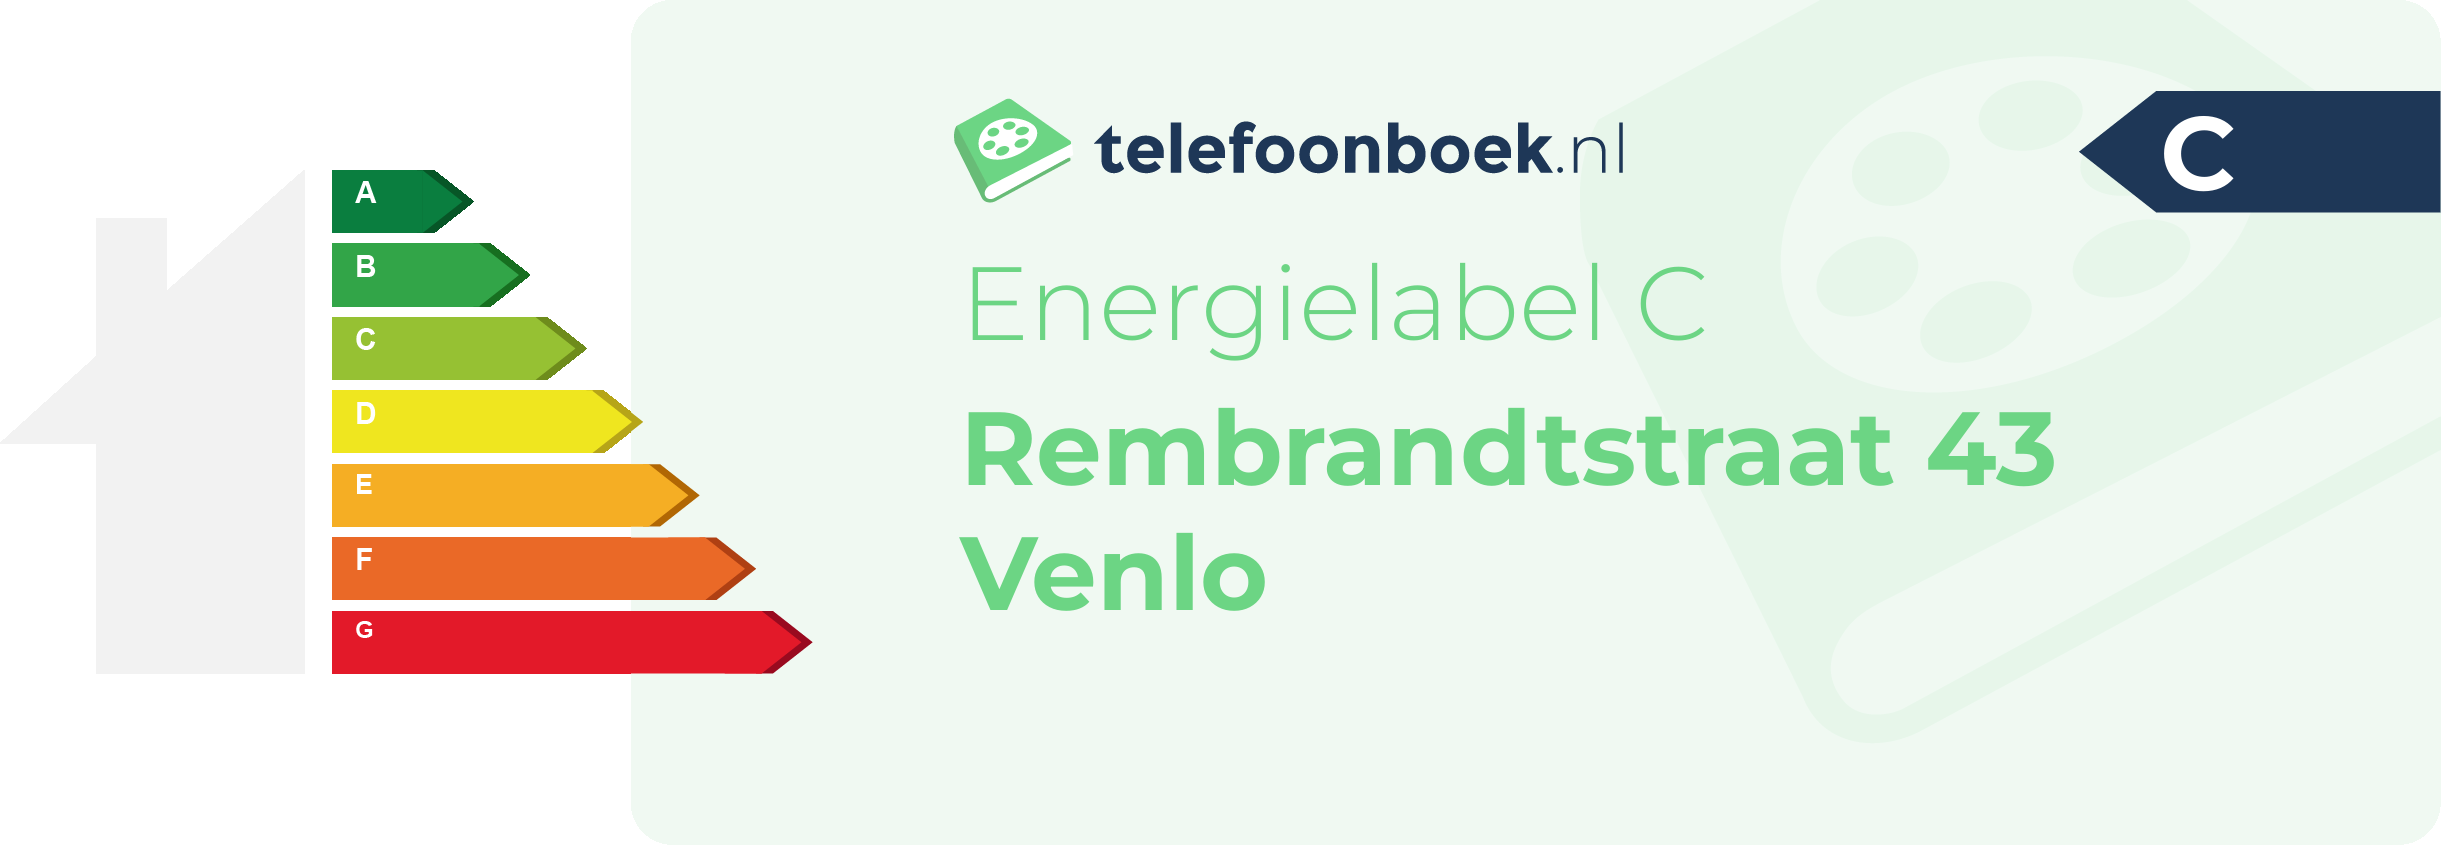 Energielabel Rembrandtstraat 43 Venlo